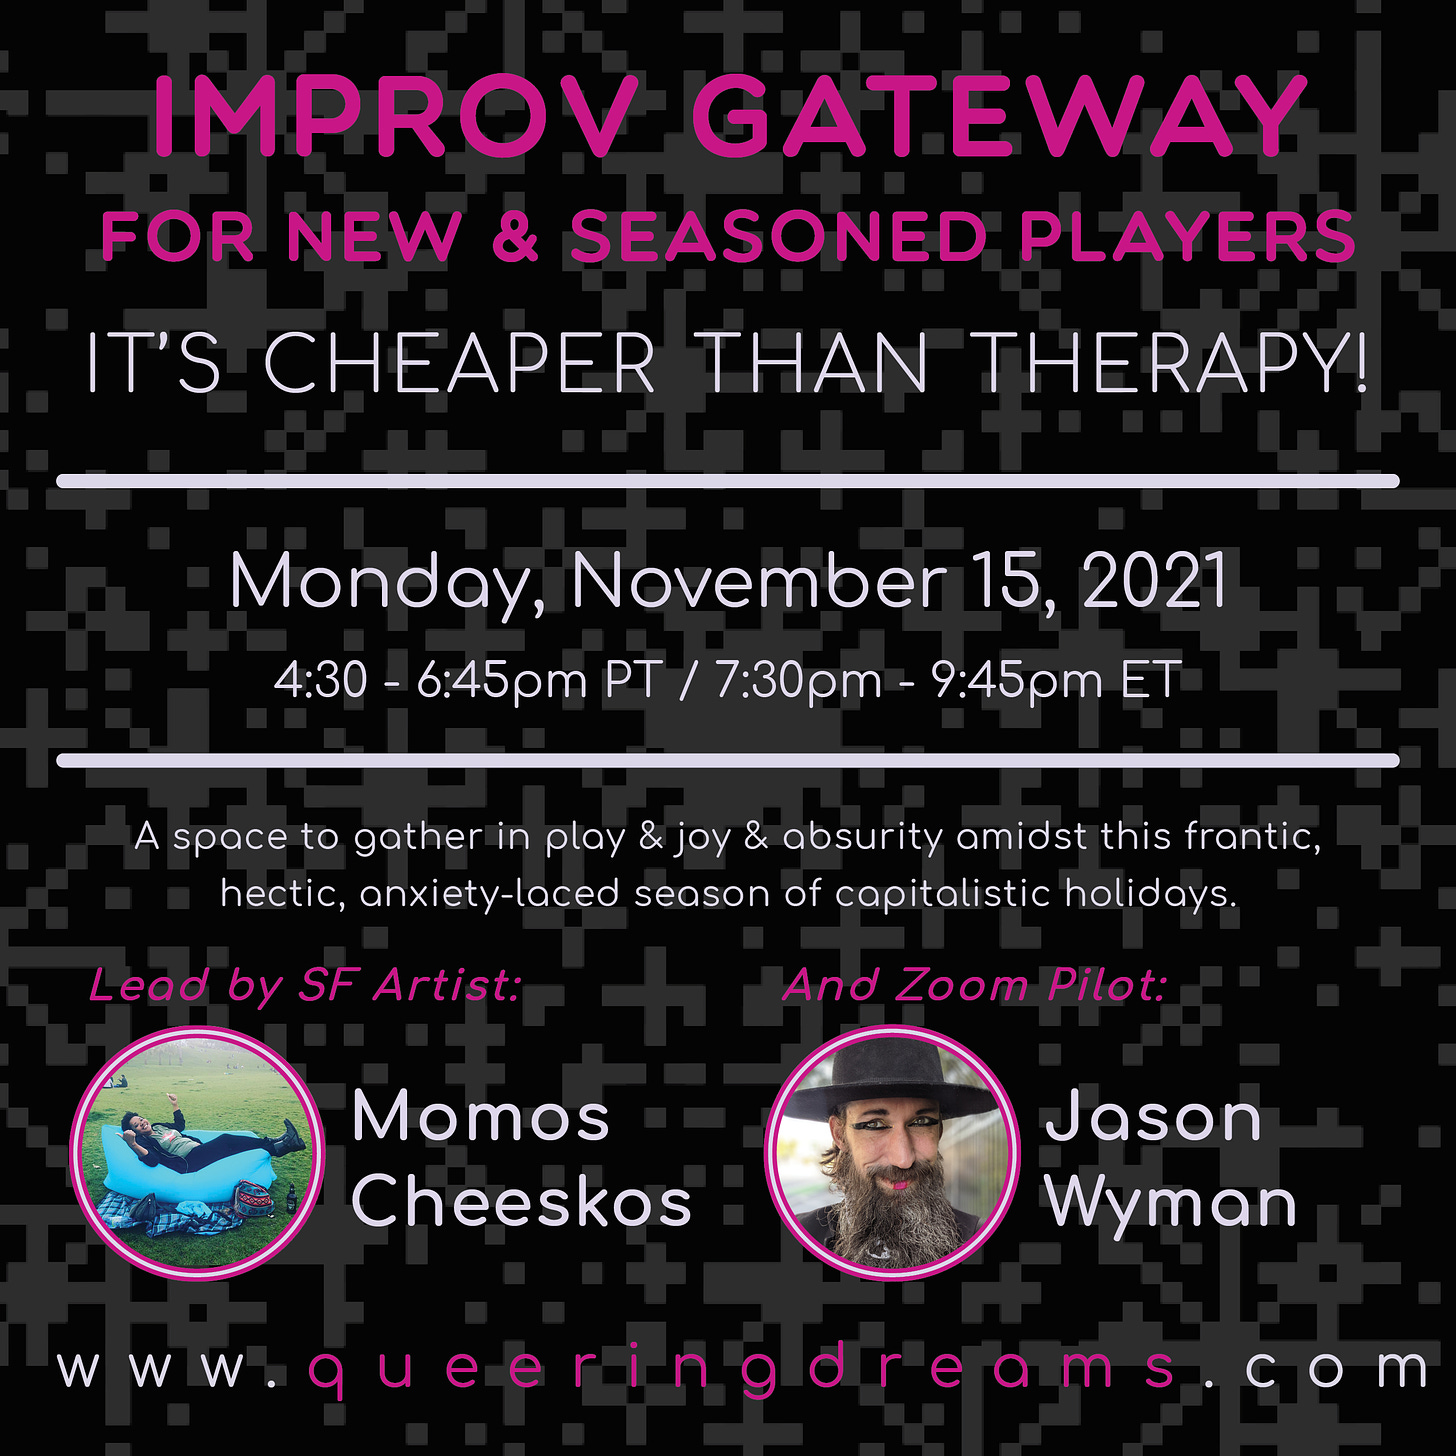 Digital flyer for Improv Gateway.